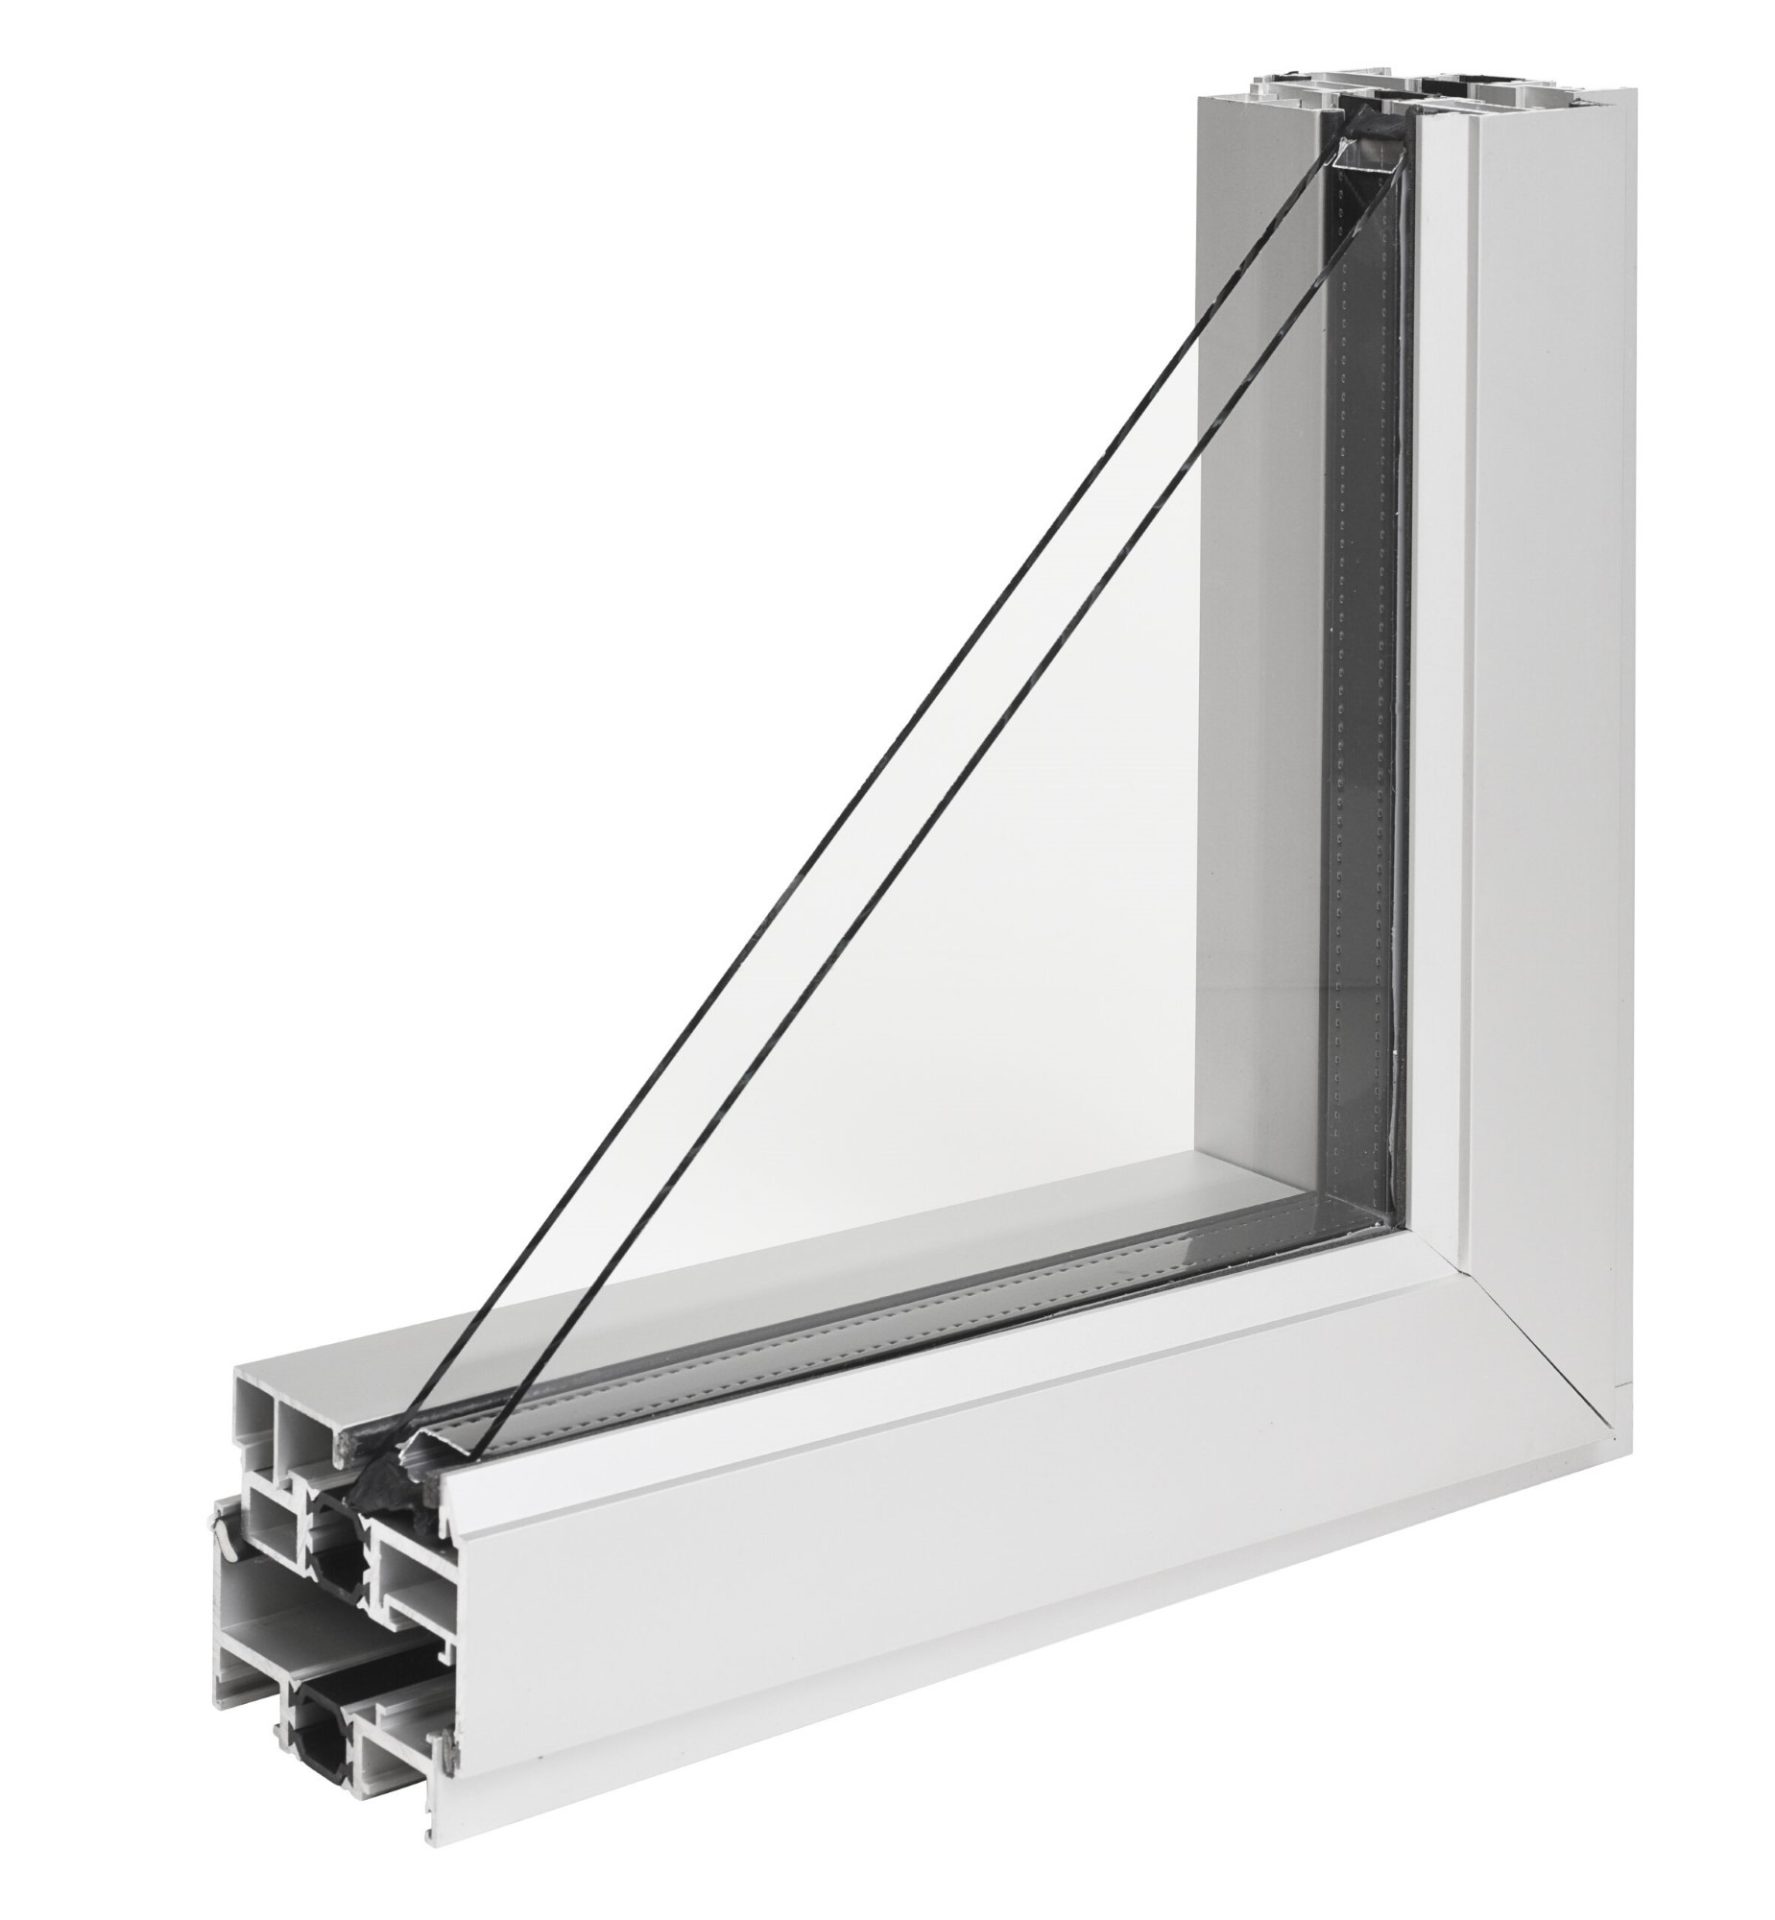 NX-300 Series Thermal Windows - Kawneer Window Solutions